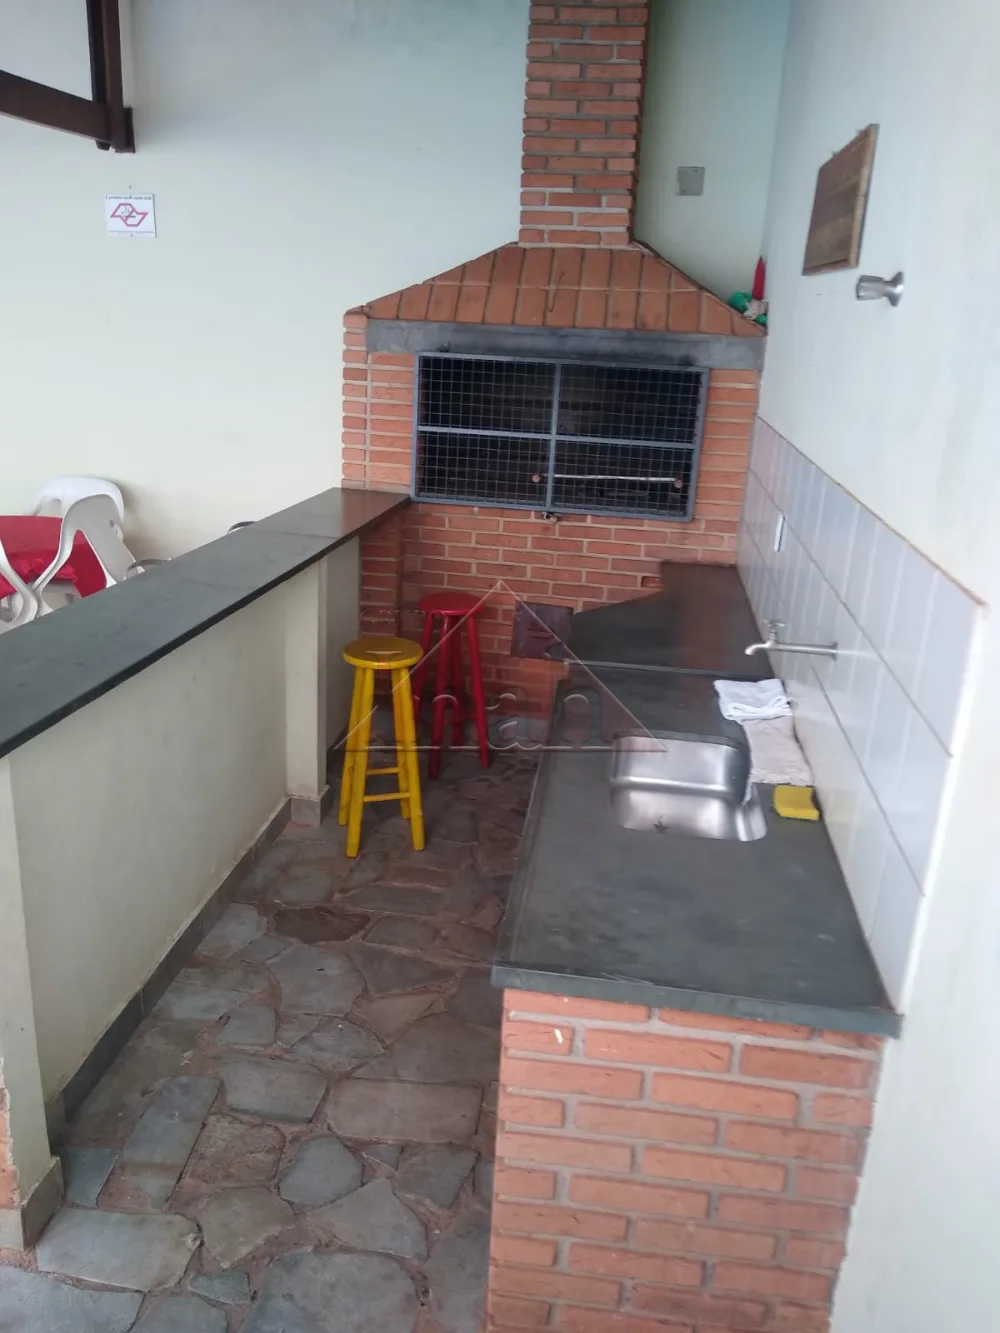 Alugar Apartamentos / Apartamento em Ribeirão Preto R$ 1.000,00 - Foto 8